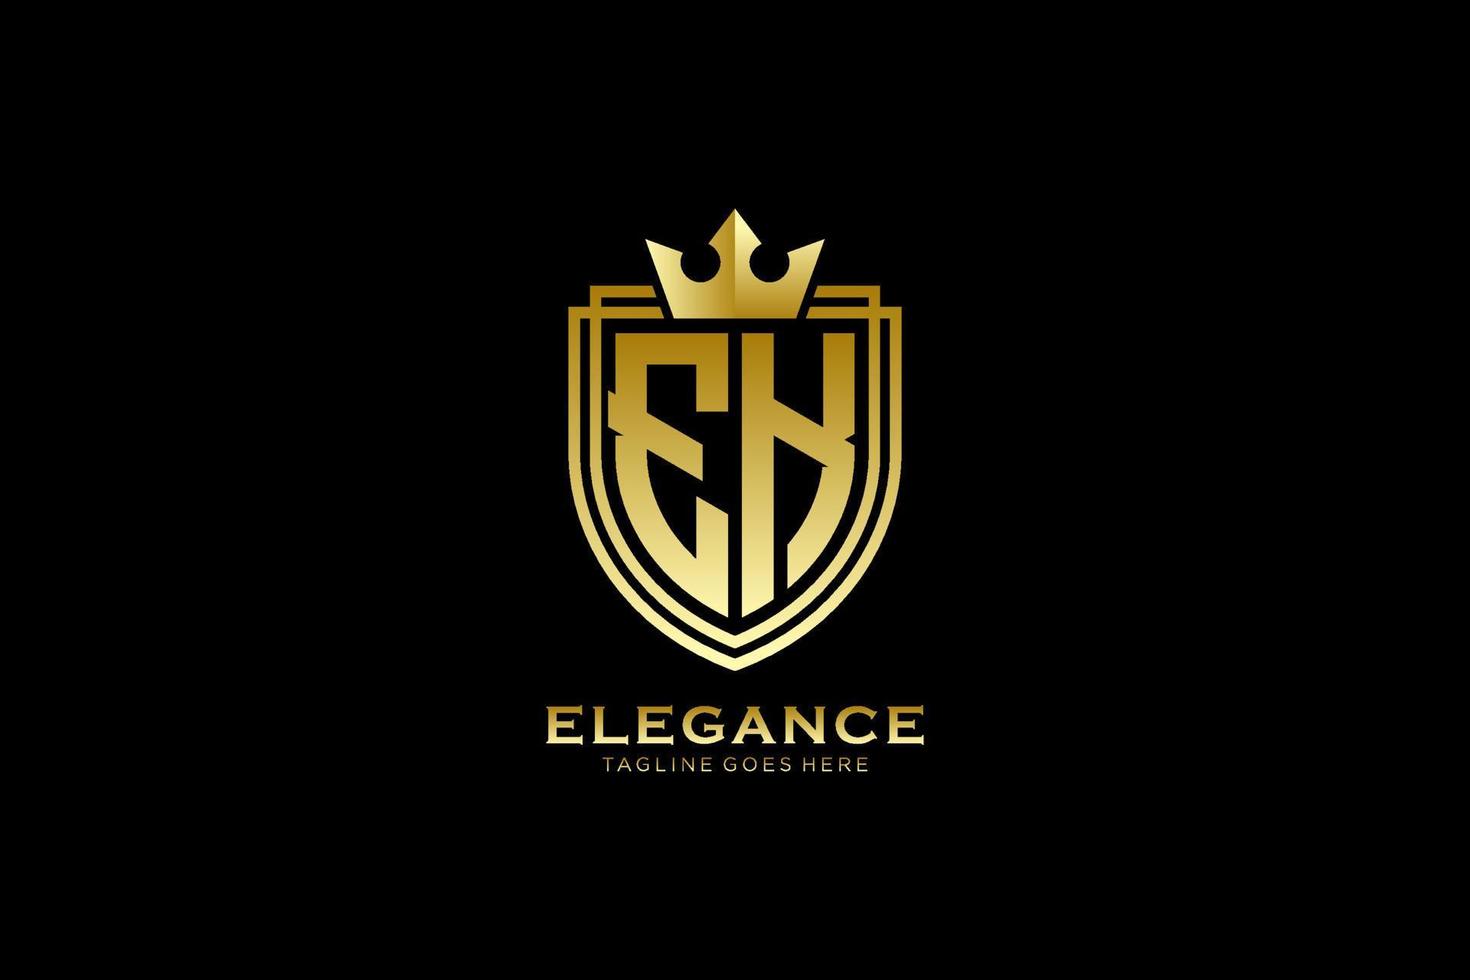 första ek elegant lyx monogram logotyp eller bricka mall med rullar och kunglig krona - perfekt för lyxig branding projekt vektor